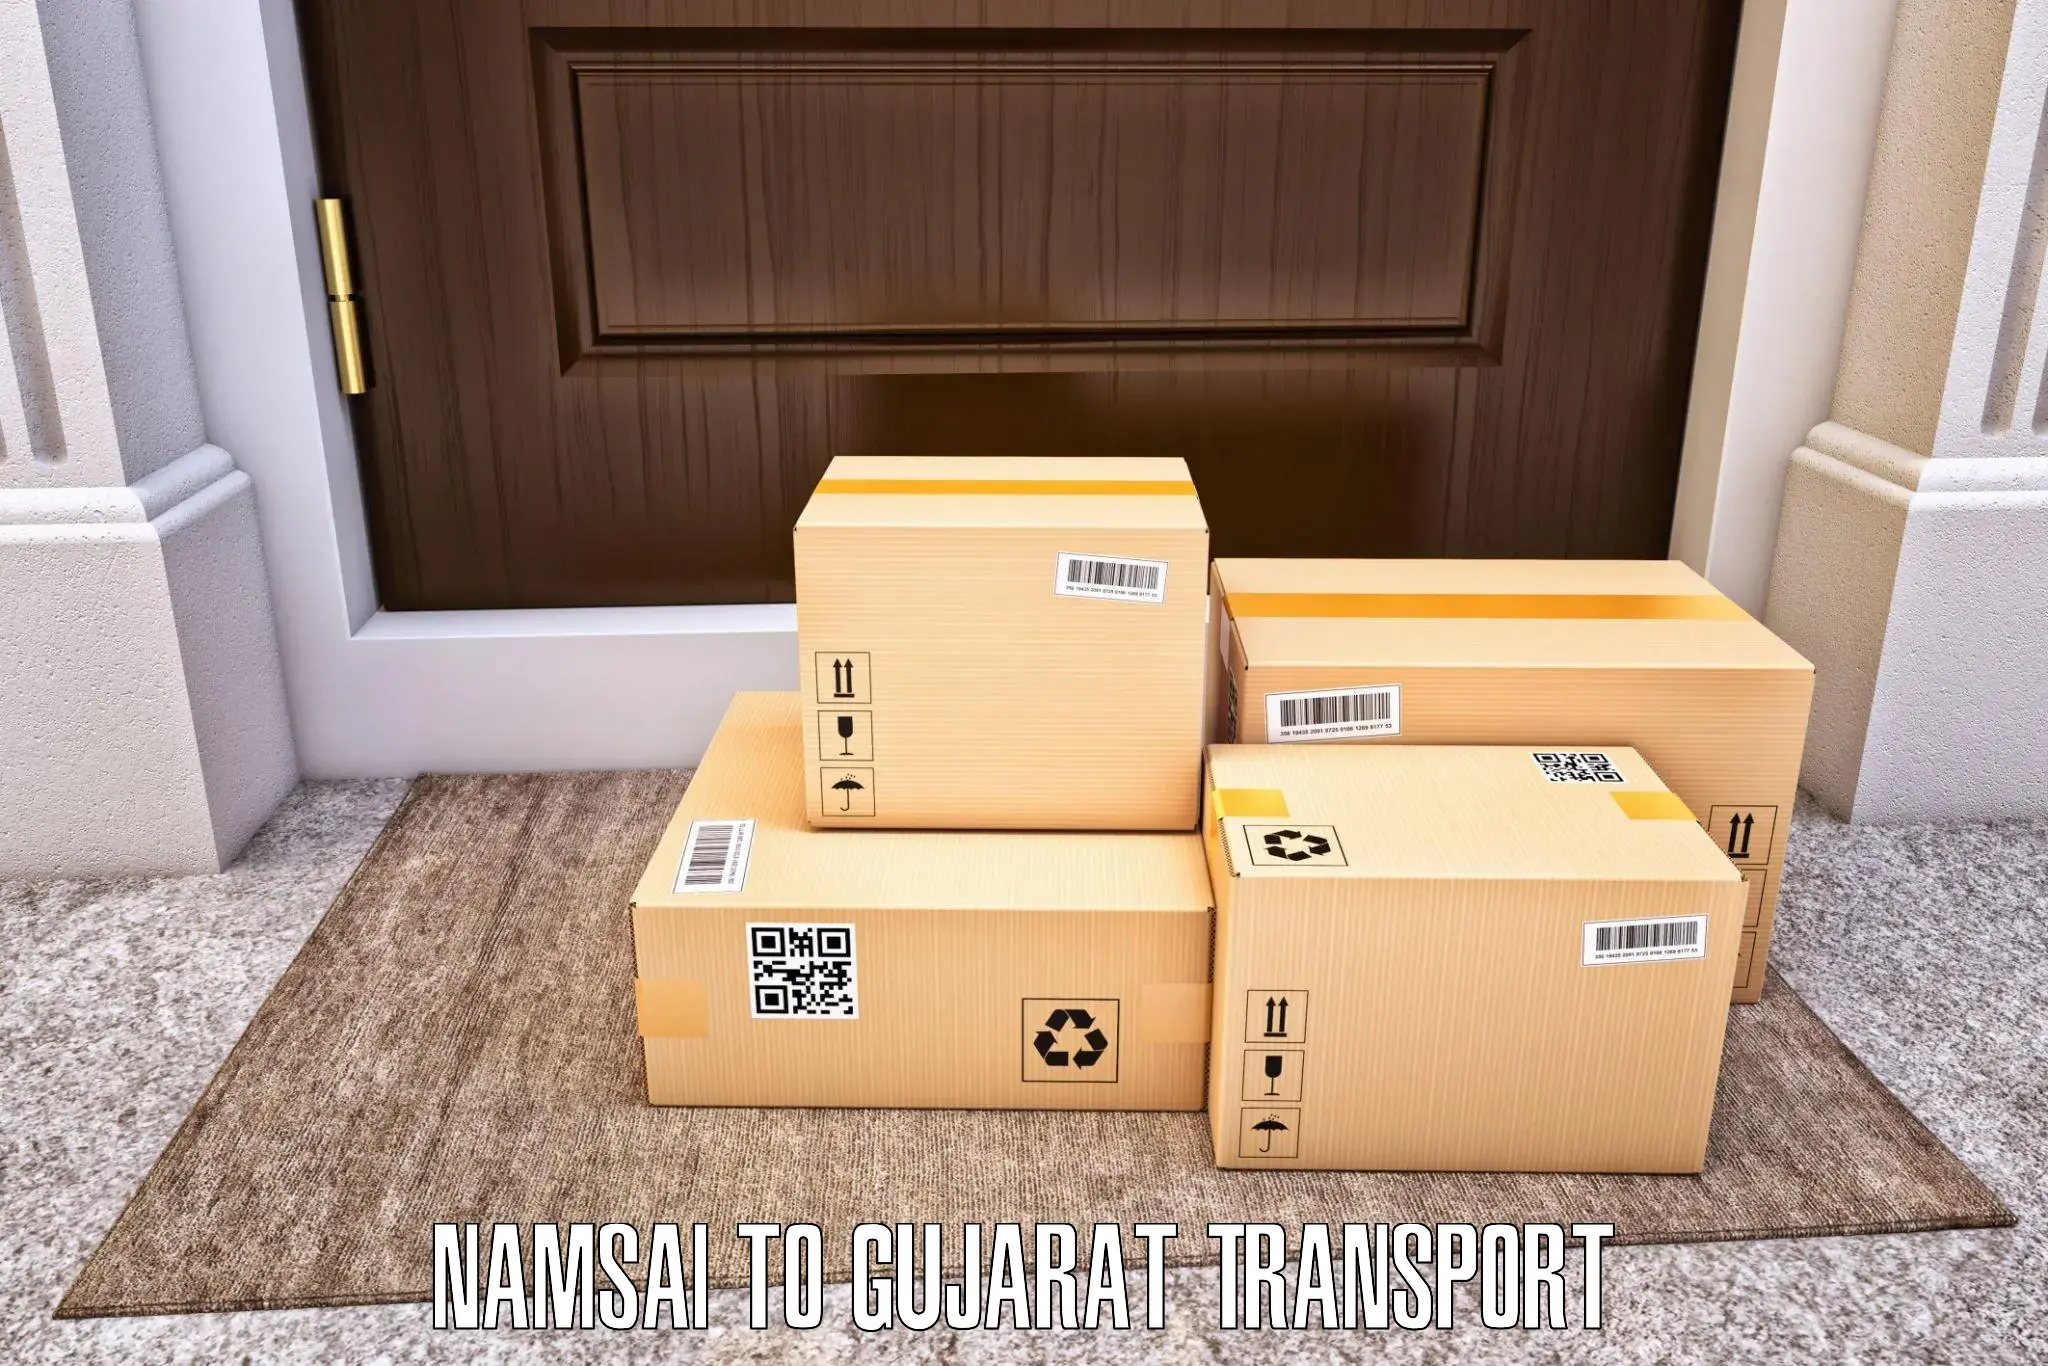 Luggage transport services Namsai to Wankaner